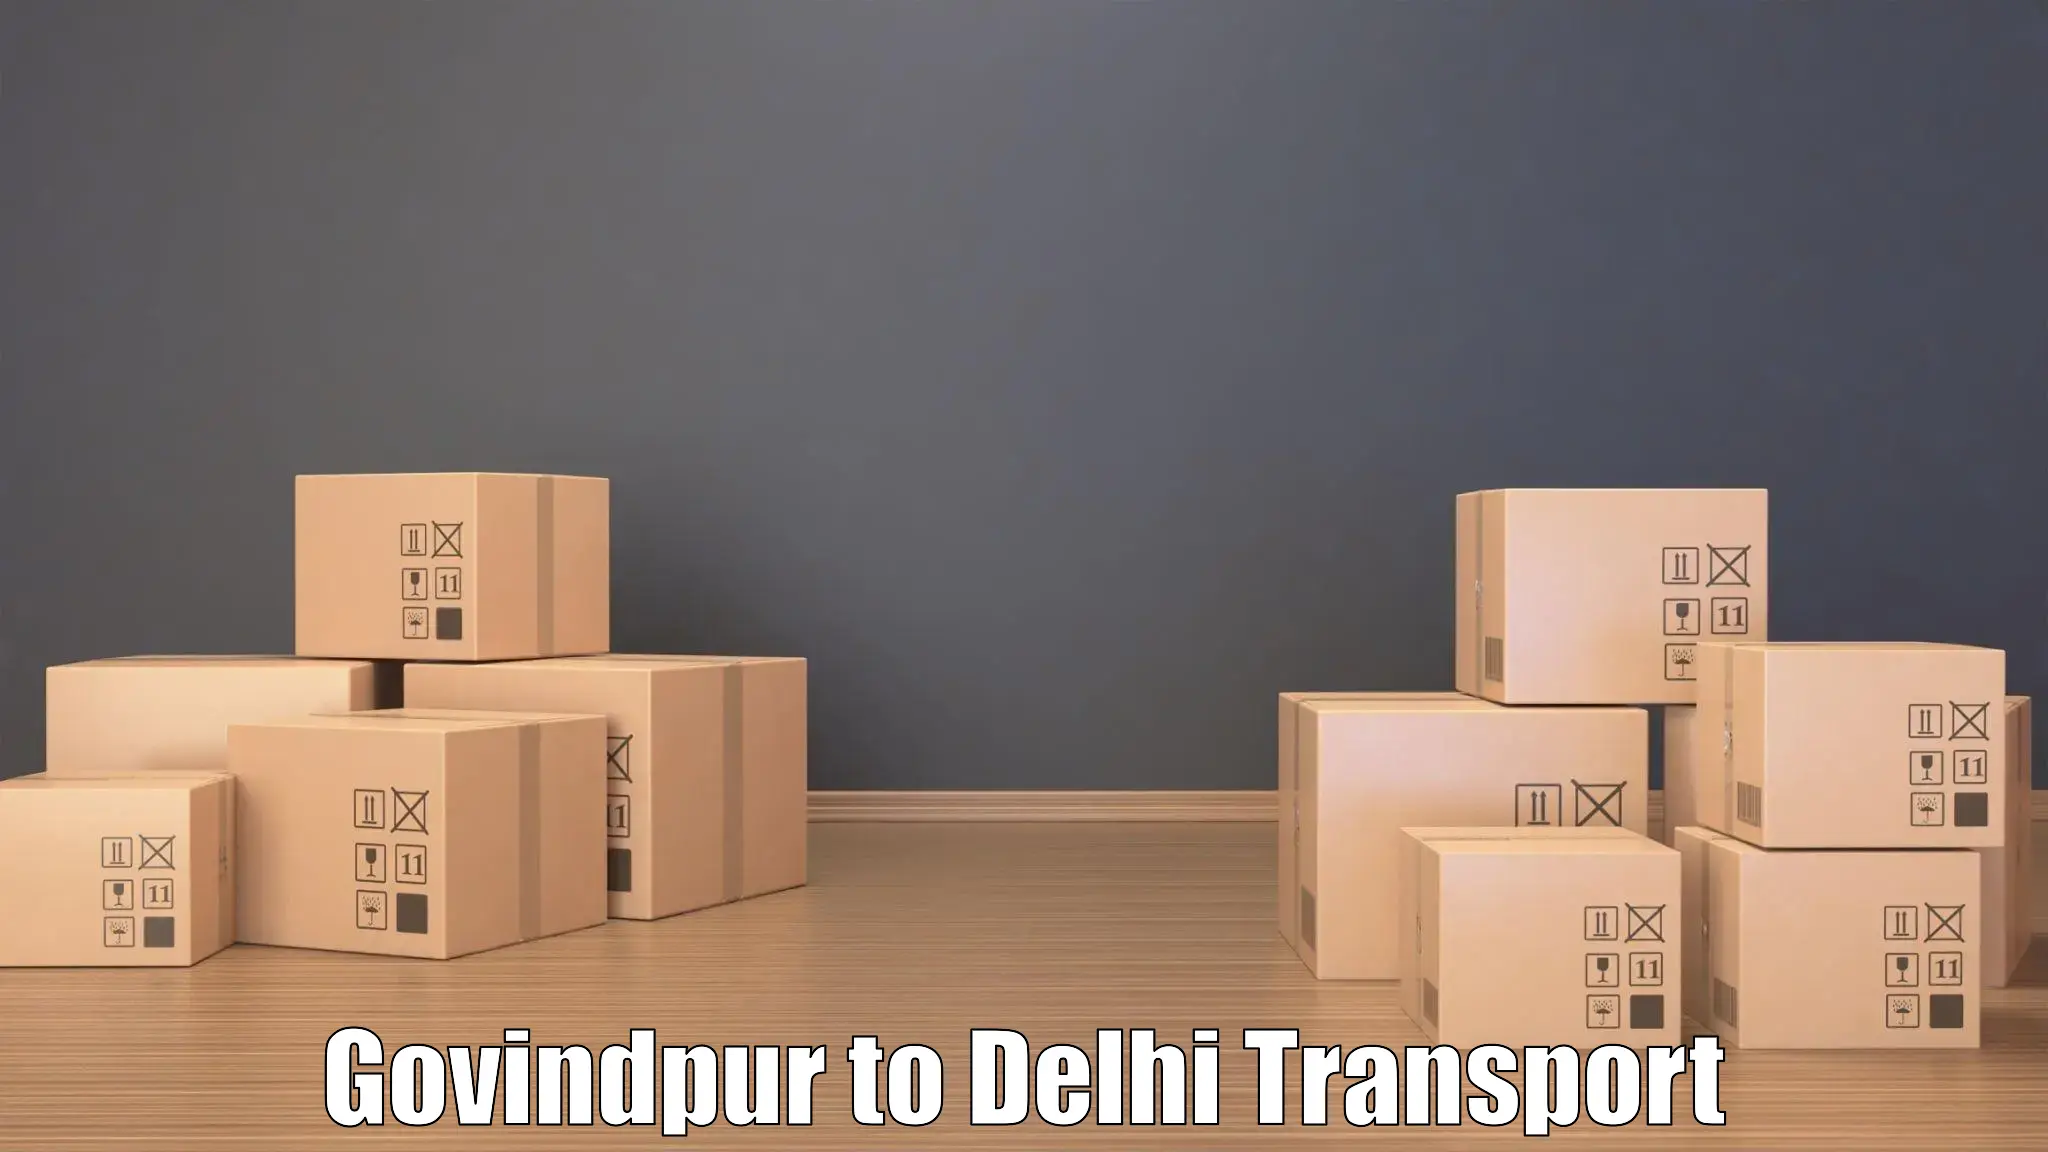 Furniture transport service Govindpur to Delhi Technological University DTU